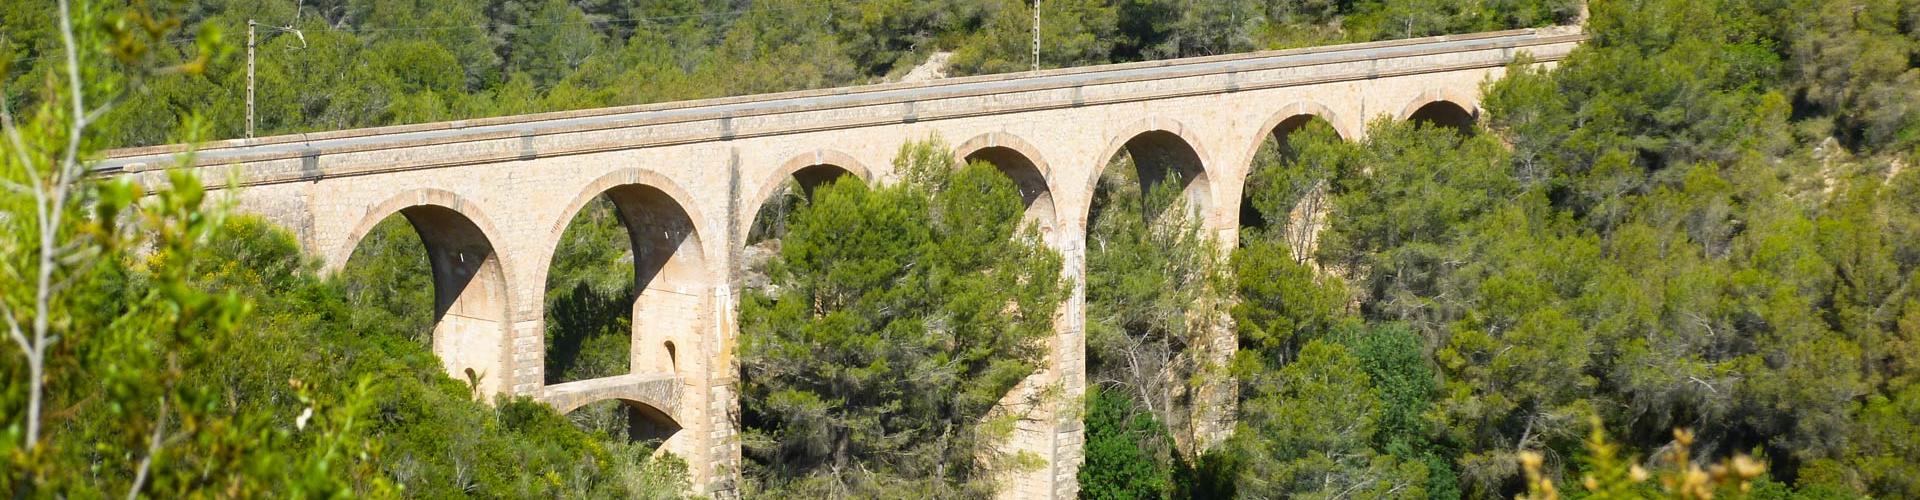 Pont dels 7 arcs. Vilabella